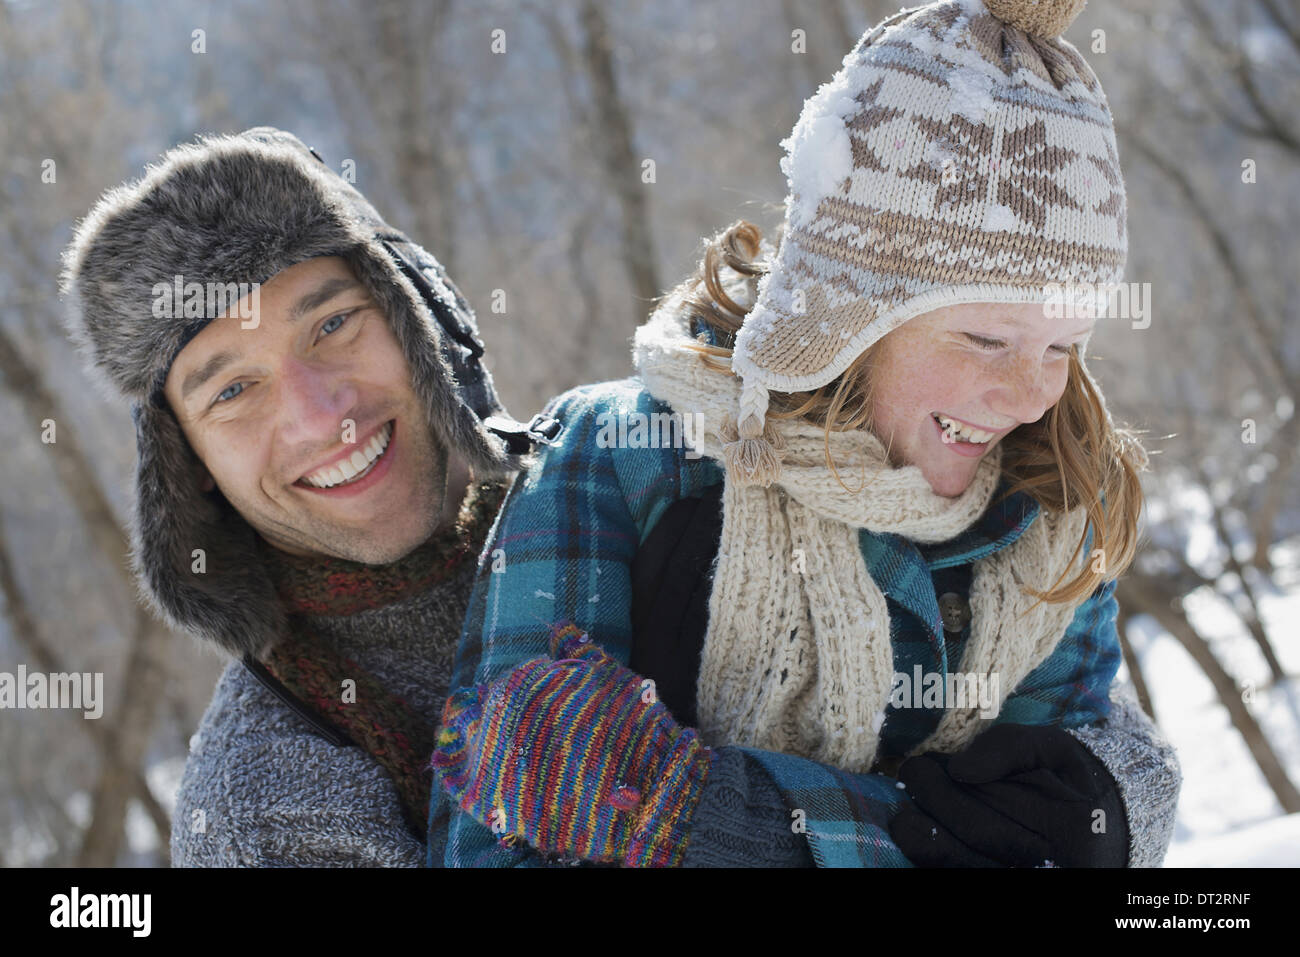 Paysage d'hiver avec neige au sol une jeune fille avec un bobble hat and scarf et un homme l'étreindre Banque D'Images